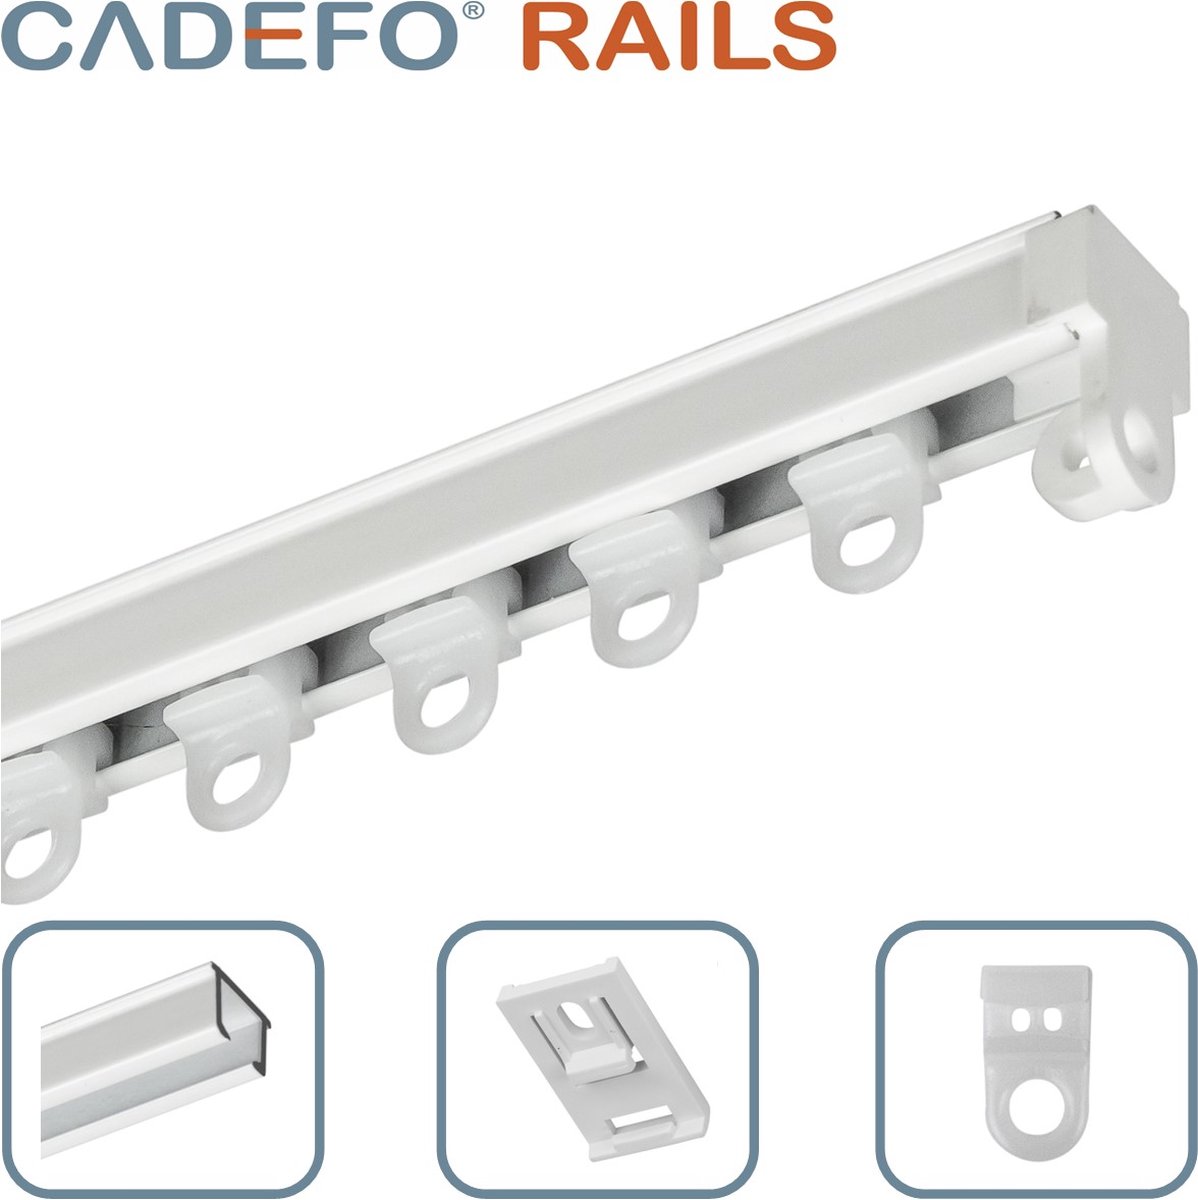 CADEFO RAILS (351 - 400 cm) Gordijnrails - Compleet op maat! - UIT 1 STUK - Leverbaar tot 6 meter - Plafondbevestiging - Lengte 380 cm